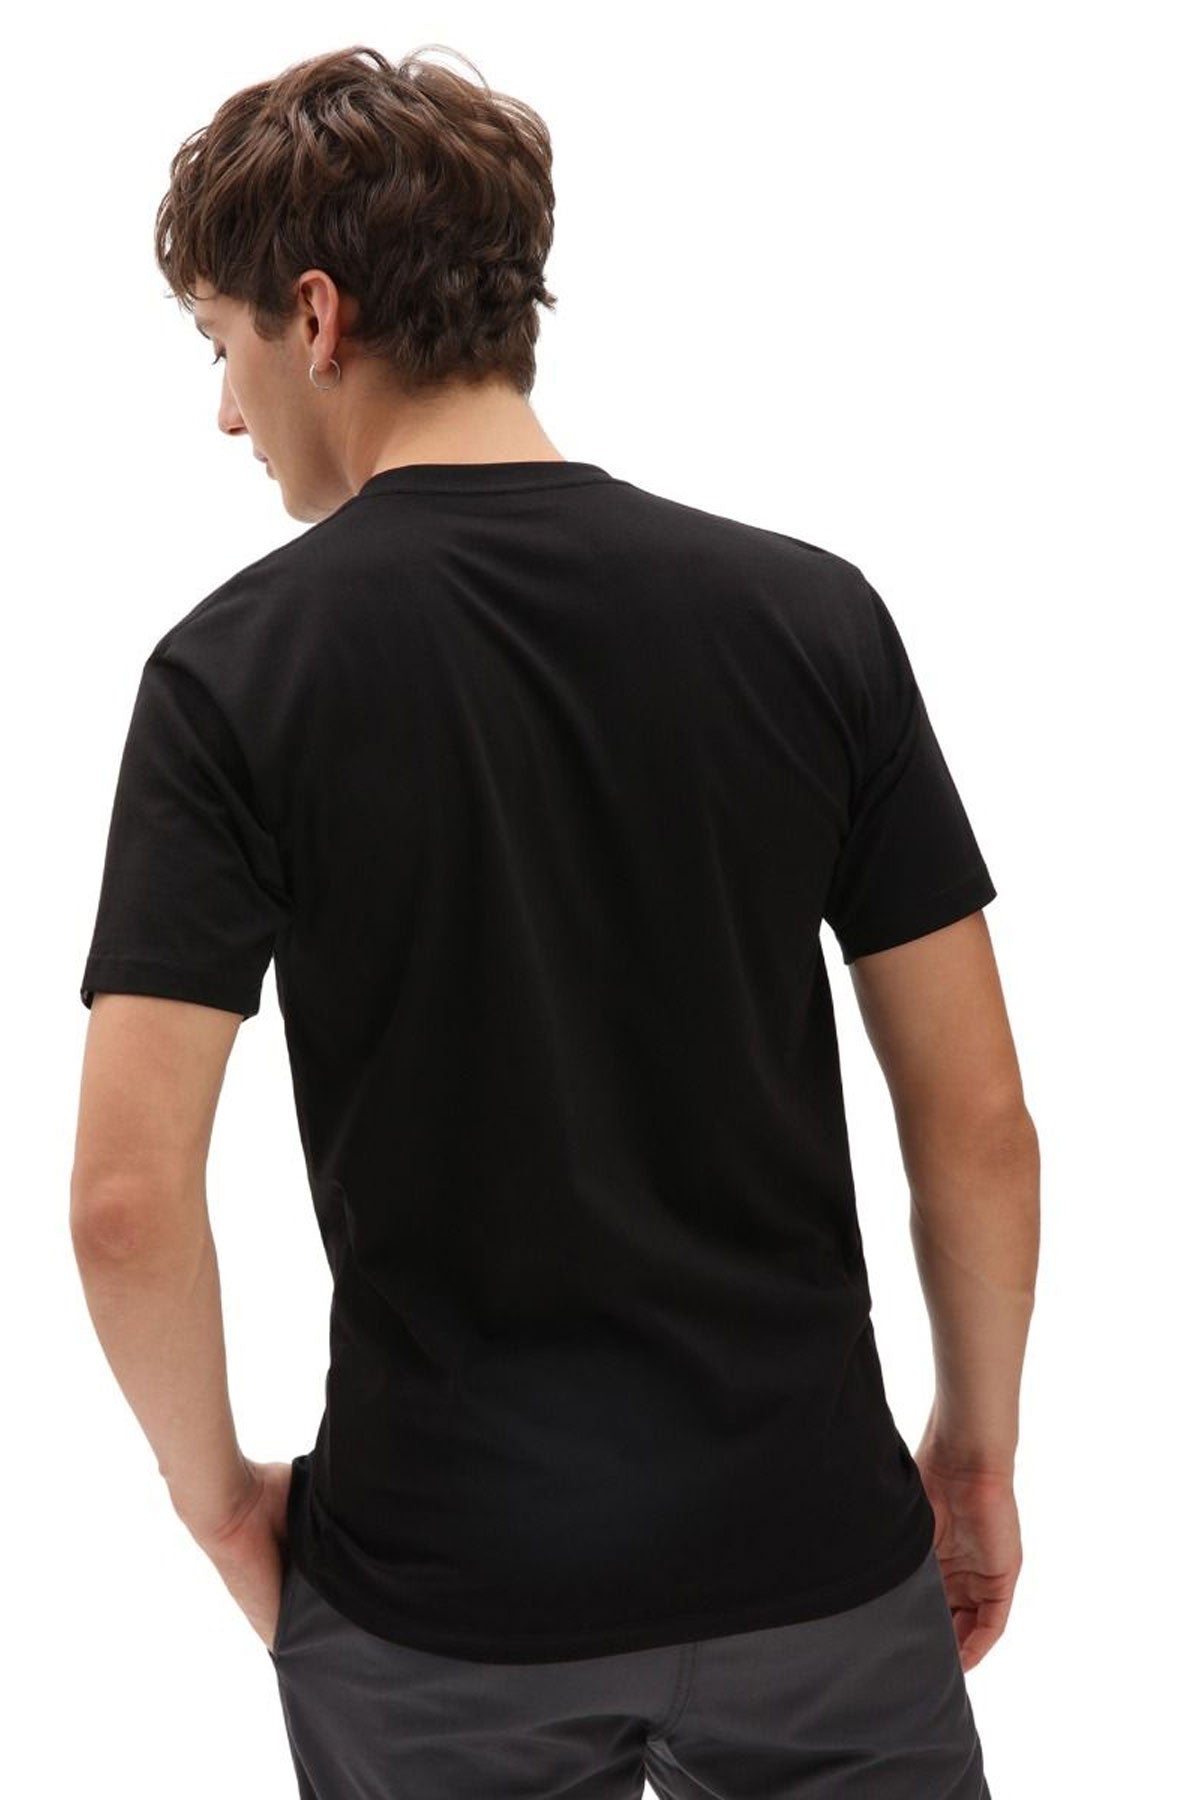 ואנס חולצת טישירט קצרה Classic בצבע שחור לגברים-Vans-XS-נאקו